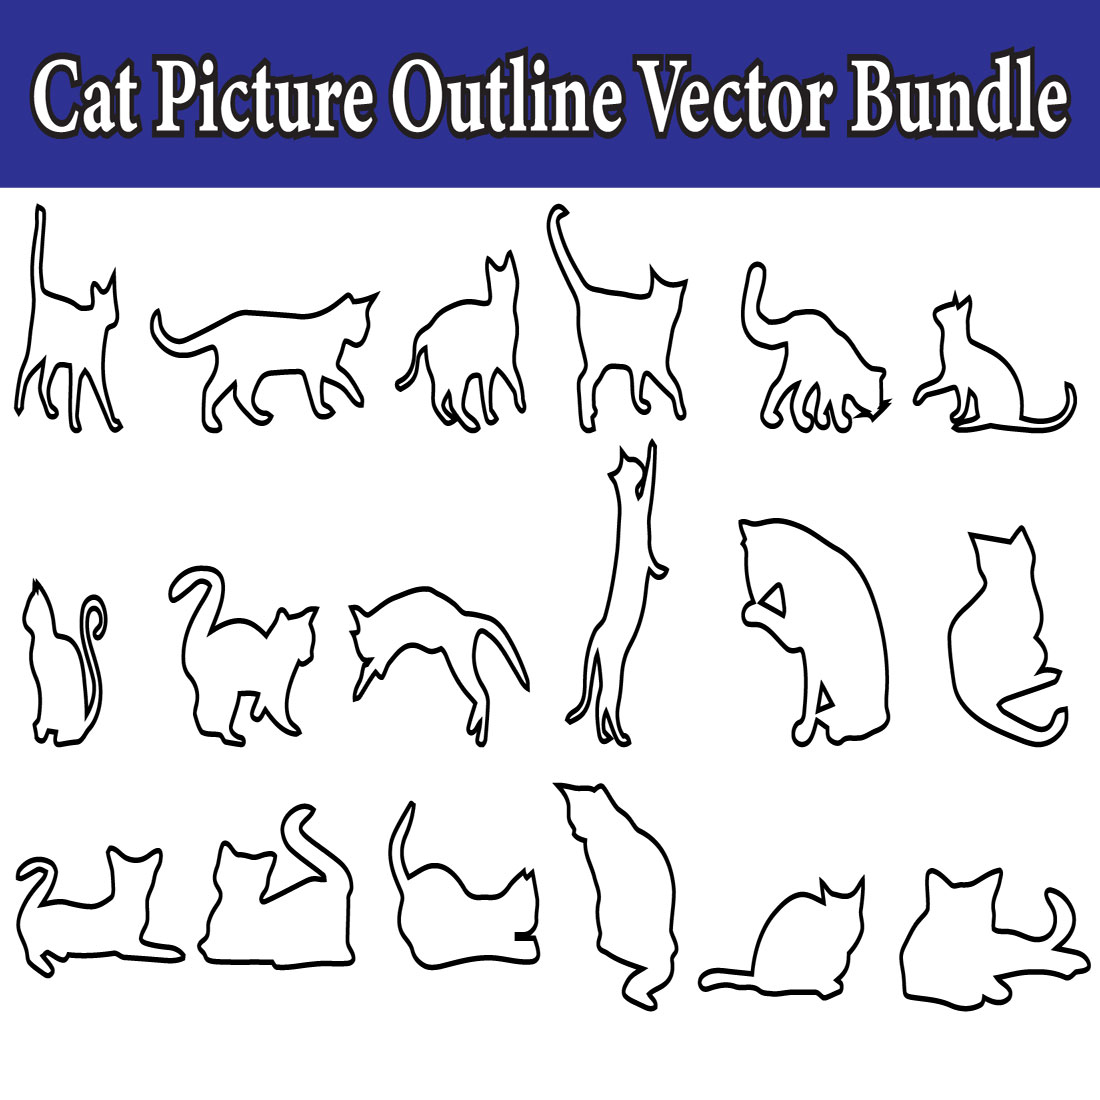 1 cat picture outline vector bundle 553